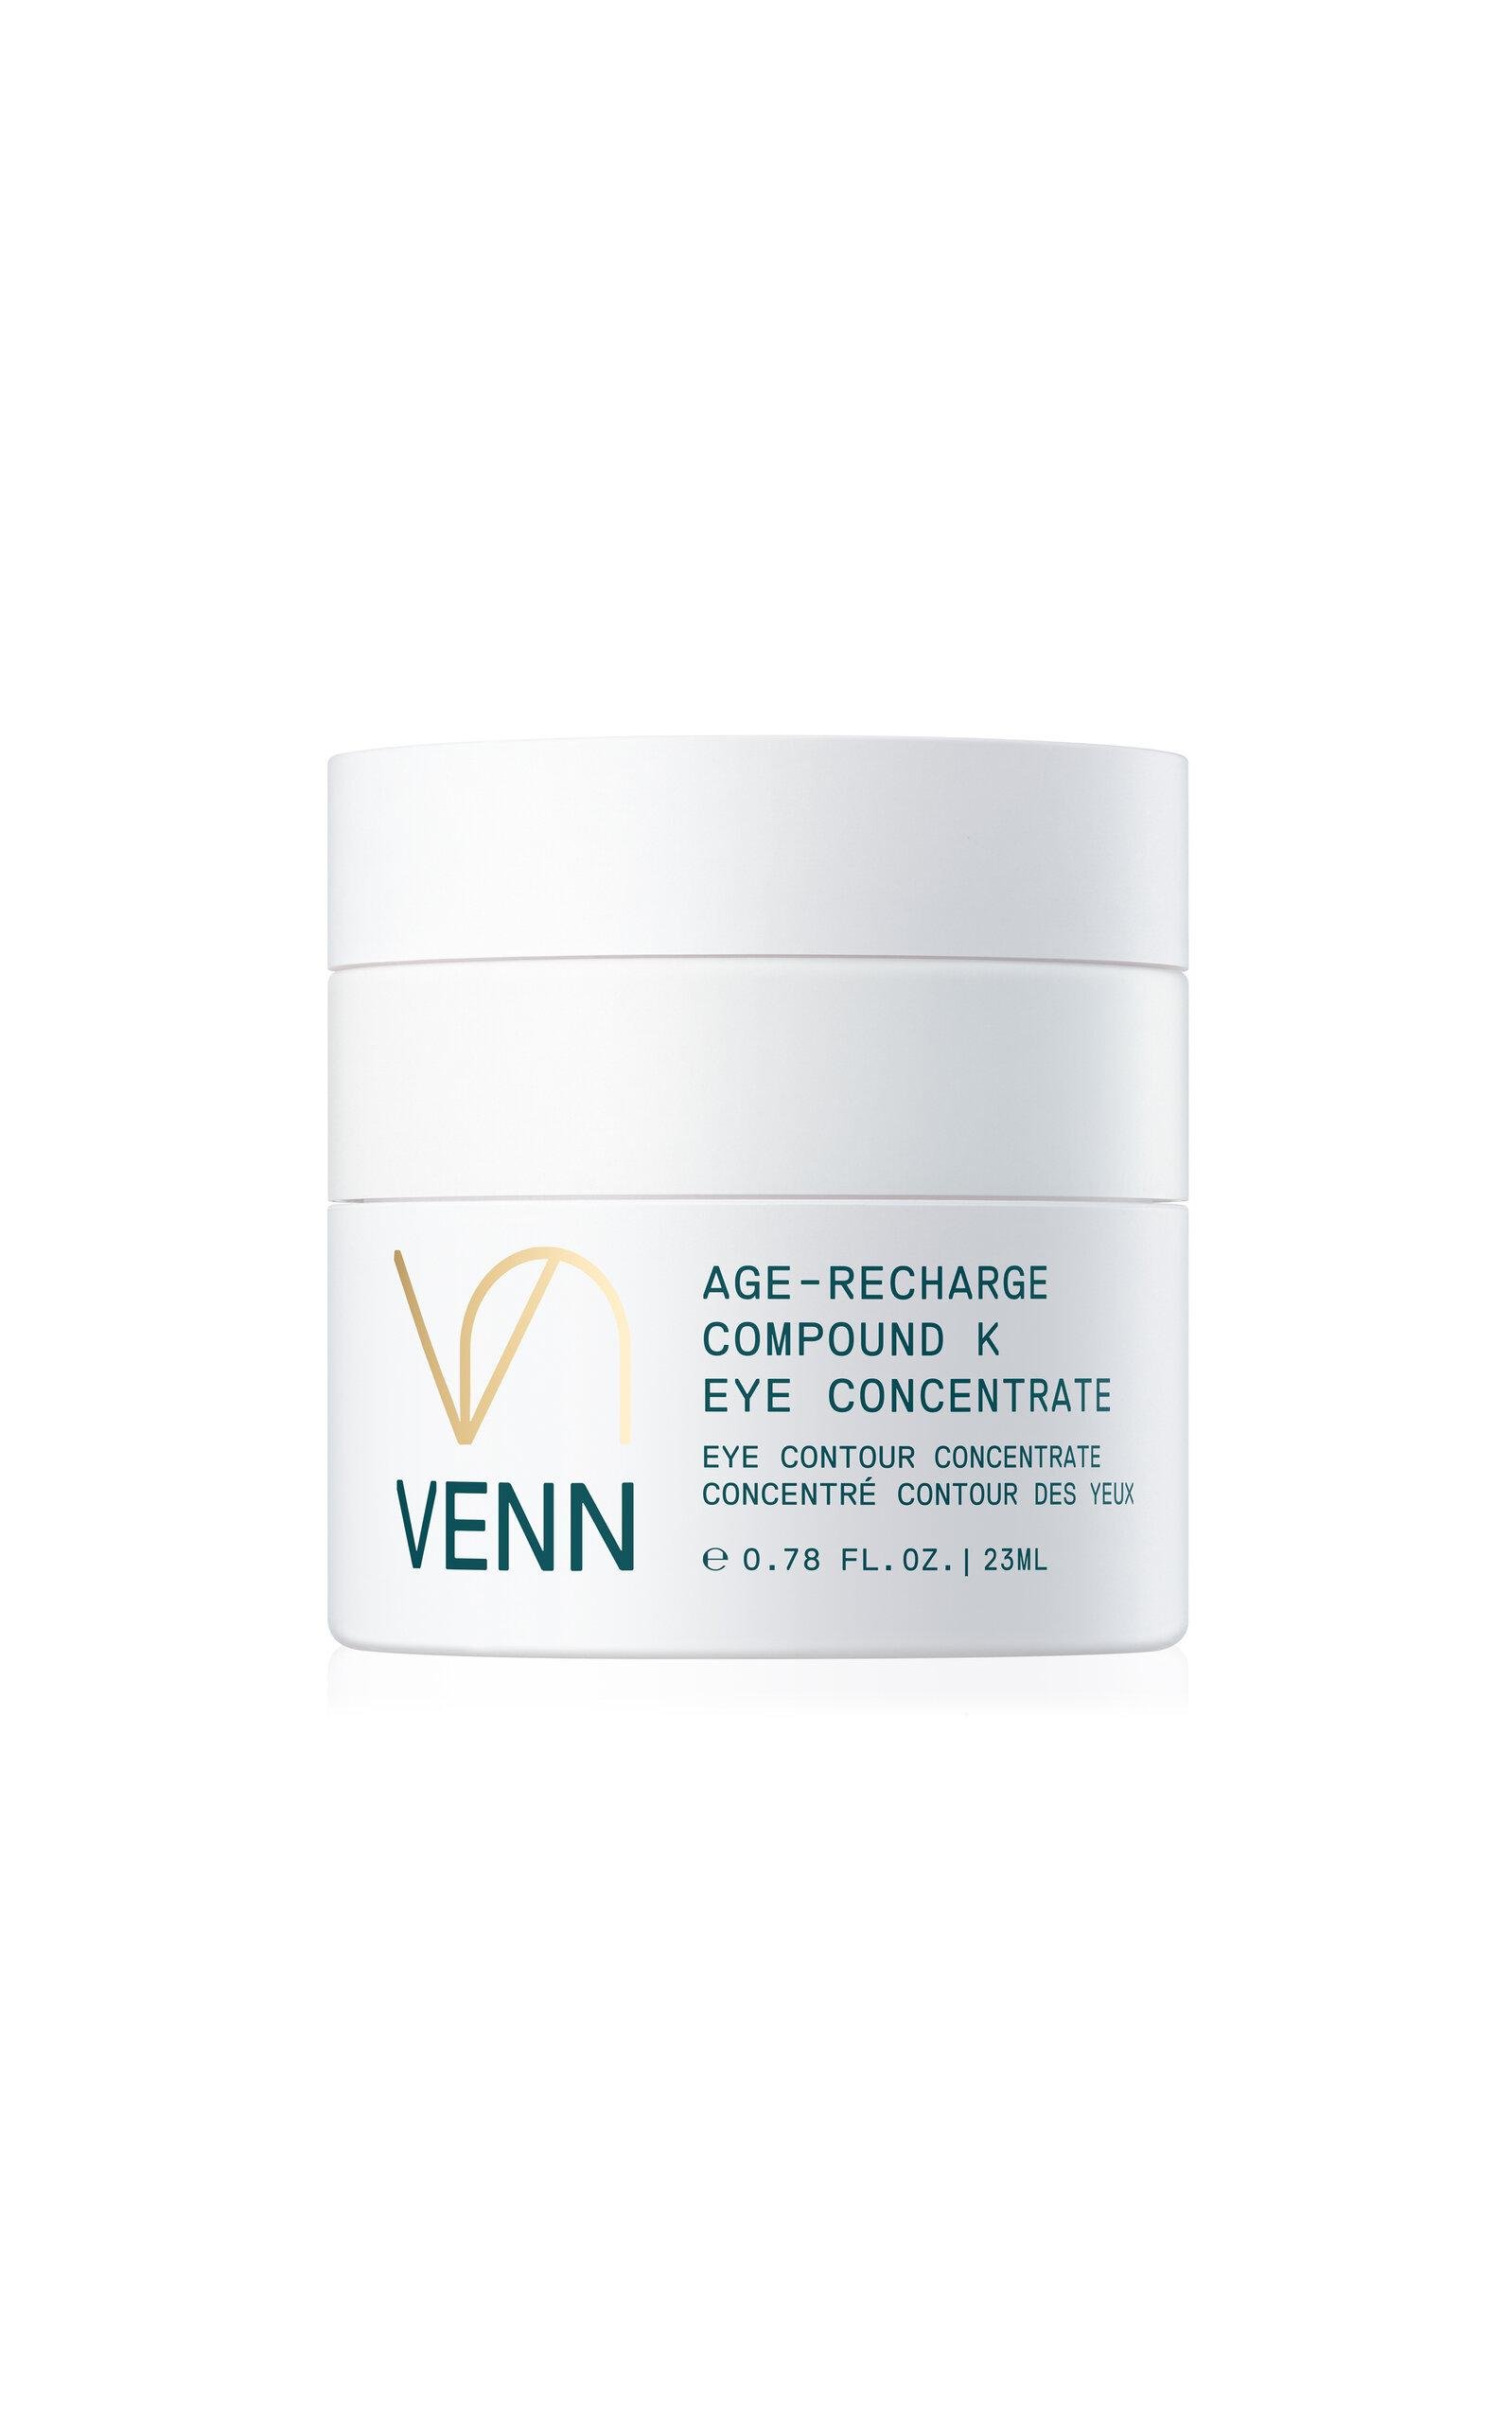 VENN Age-Recharge Compound K Eye Concentrate - Moda Operandi by VENN